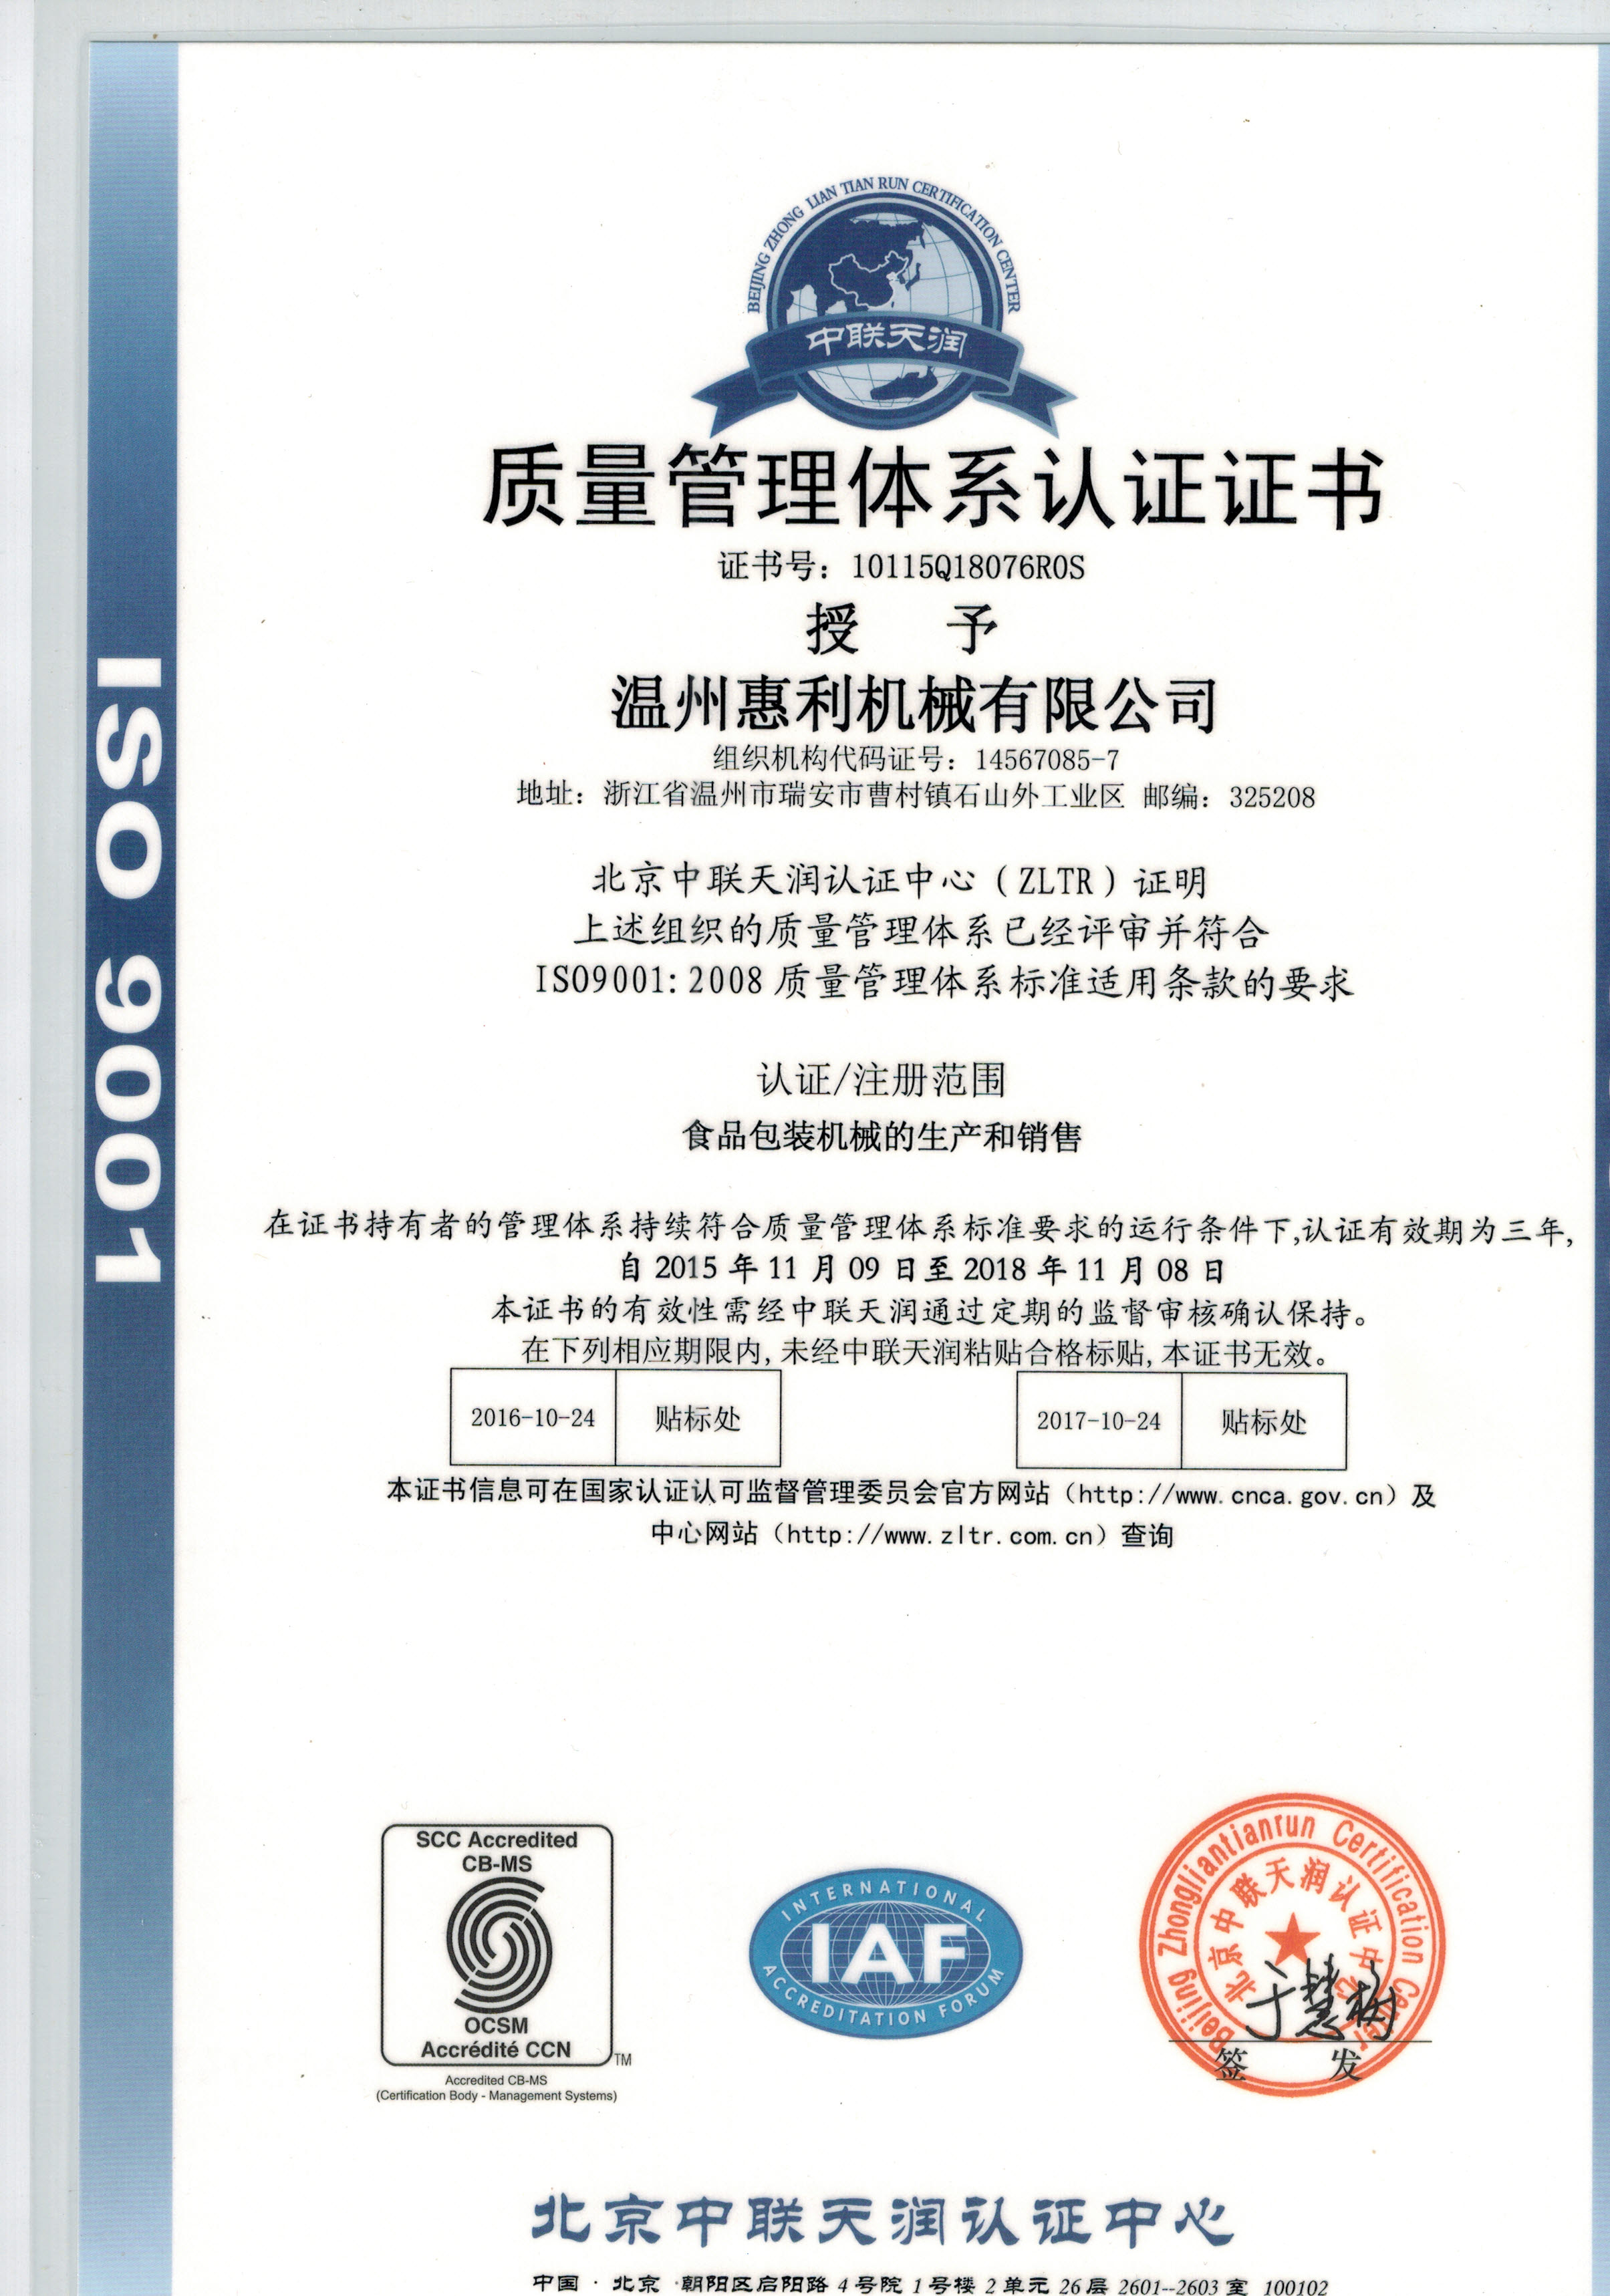 9001认证中文